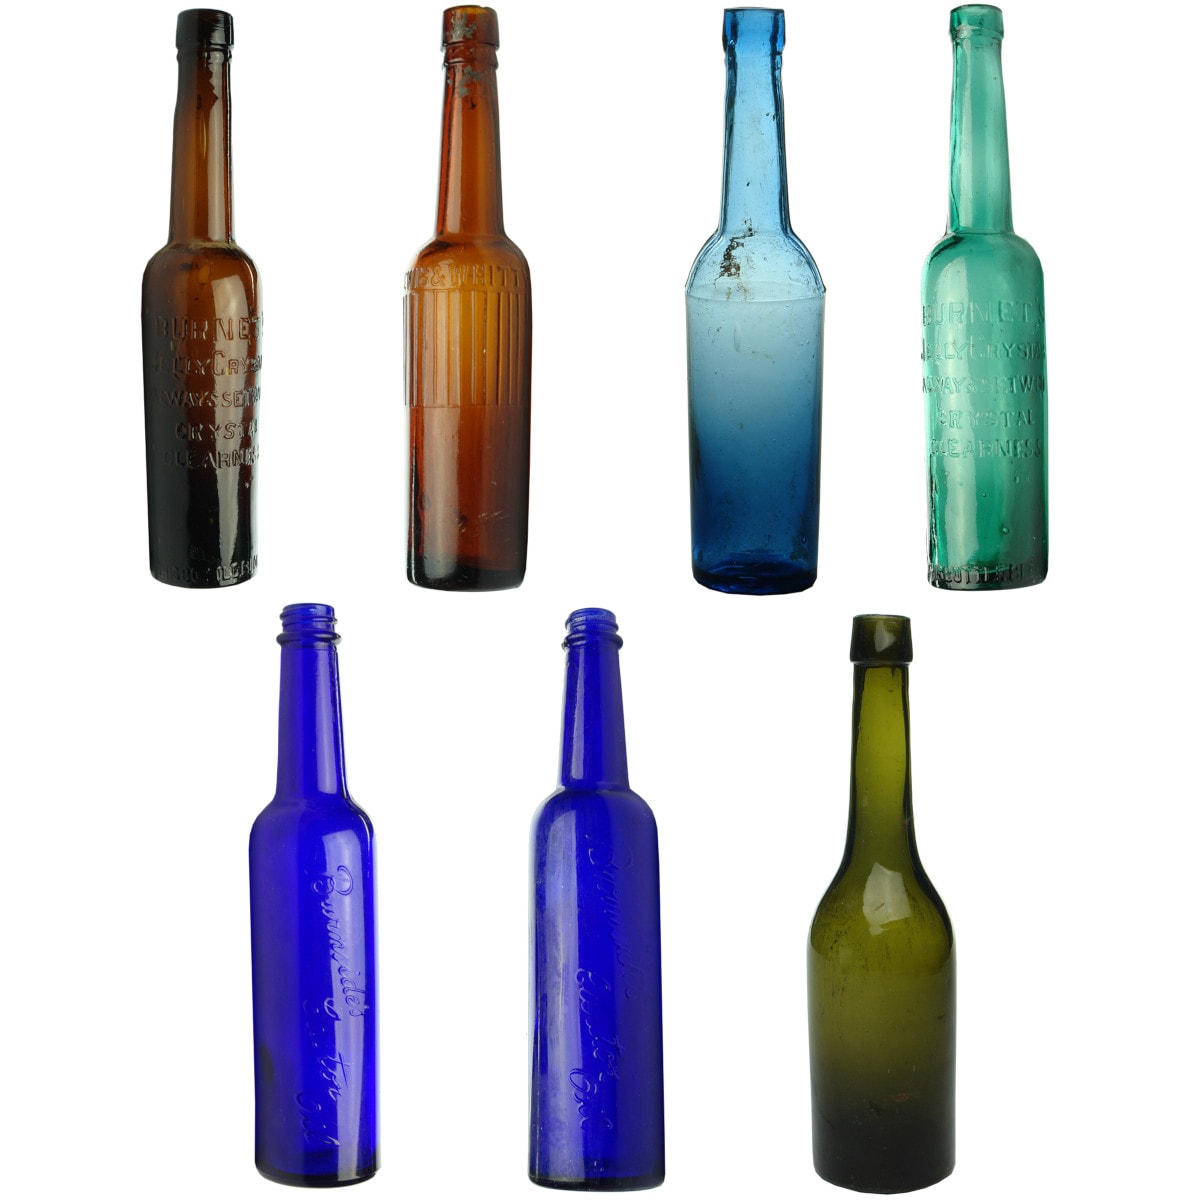 7 Bottles - 6 Castor Oils & Cod Liver Oil: Burnet's; Lewis & Whitty; Plain; Burnside's and more.